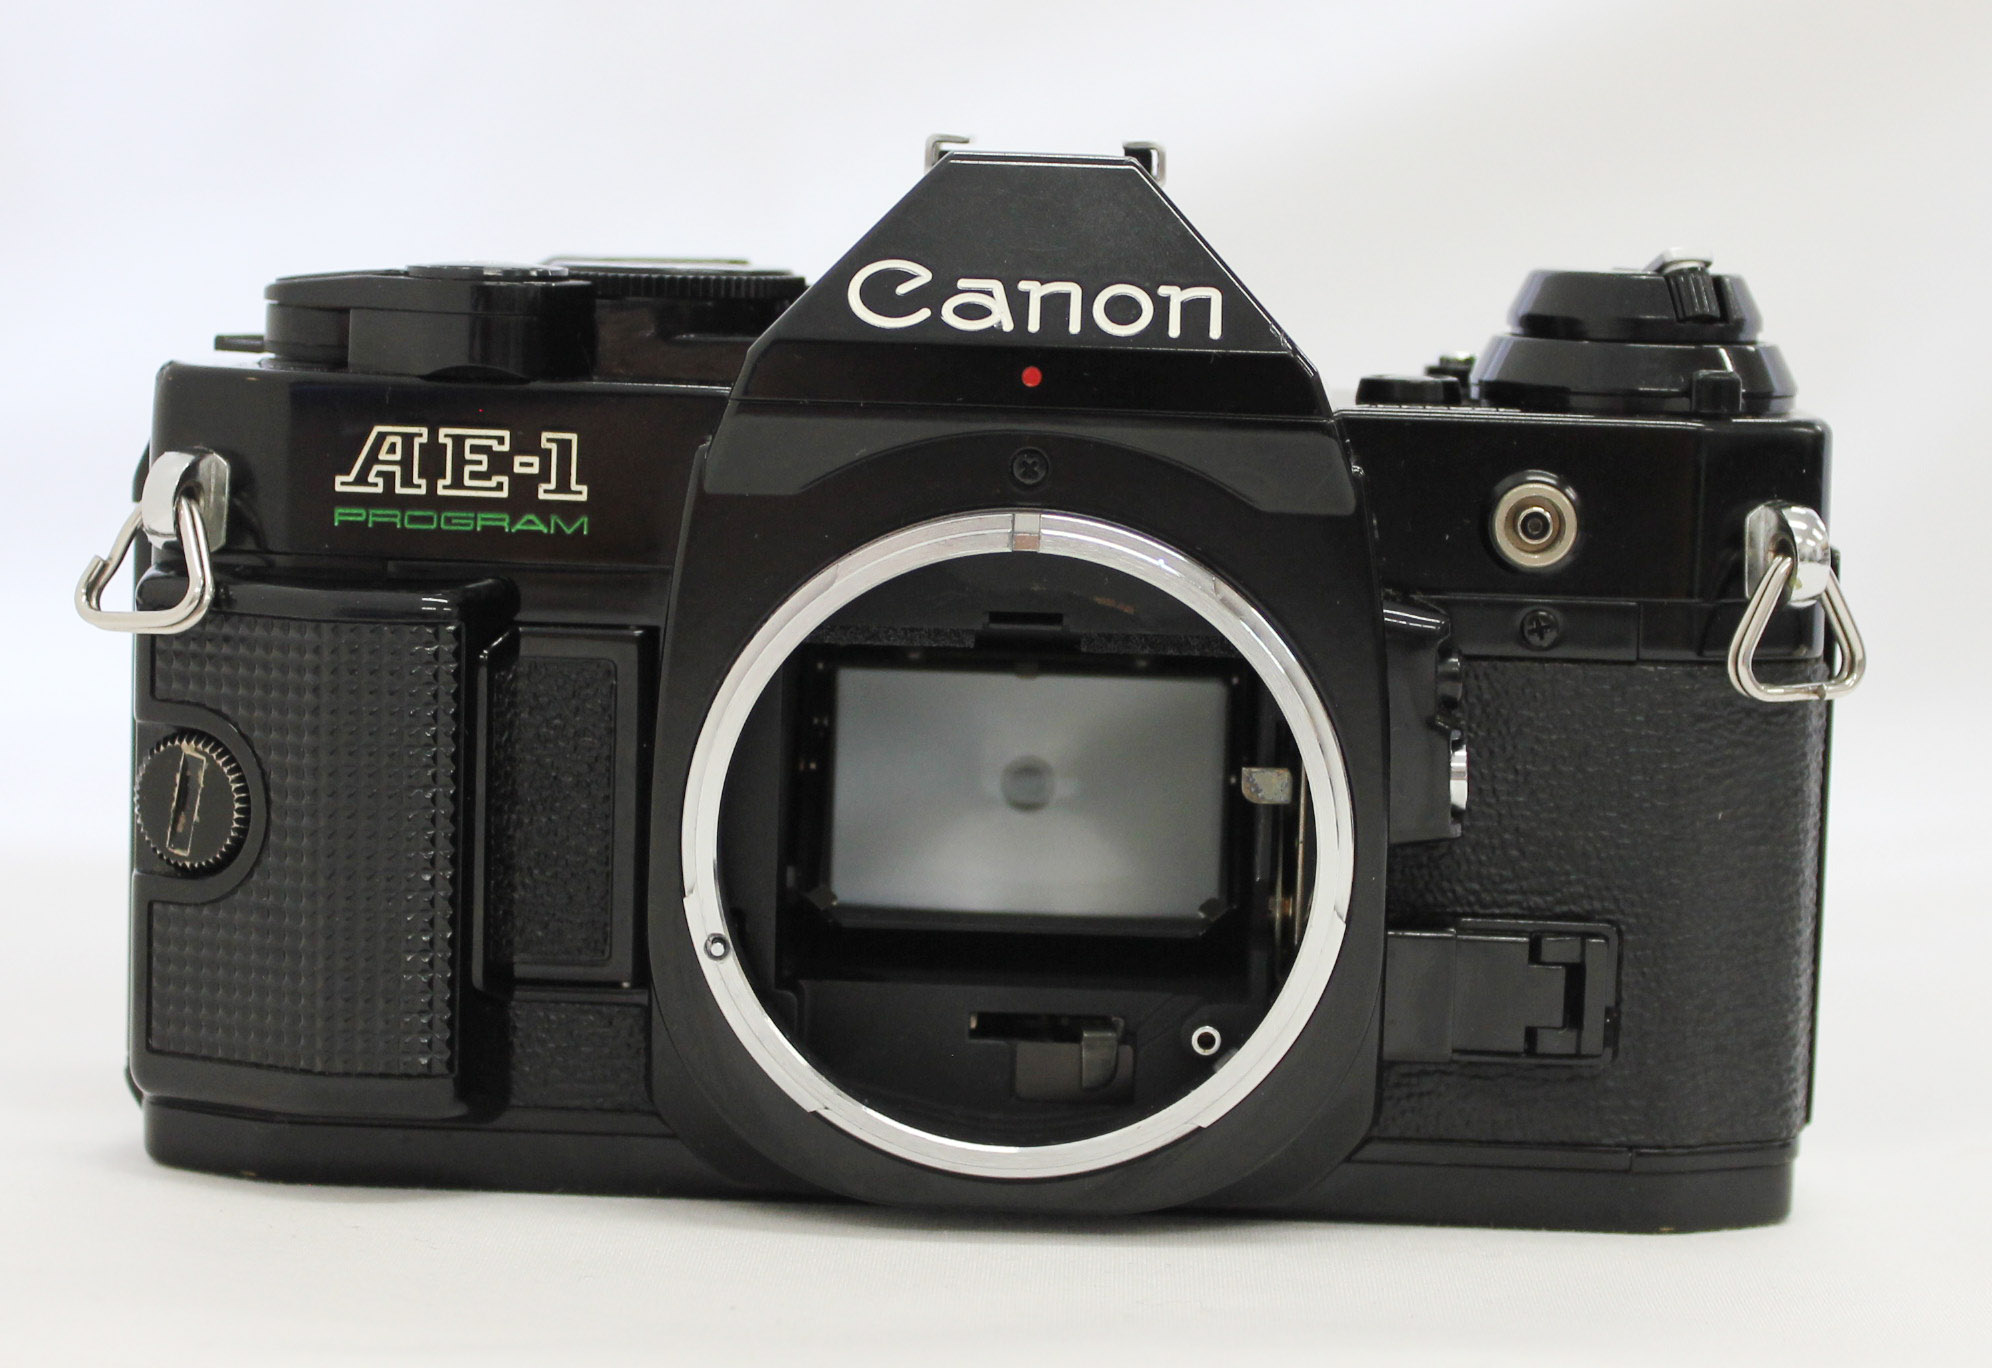 カメラ フィルムカメラ Canon AE-1 Program 35mm SLR Film Camera Black with New FD 50mm F/1.4 Lens  from Japan (C1840) | Big Fish J-Camera (Big Fish J-Shop)